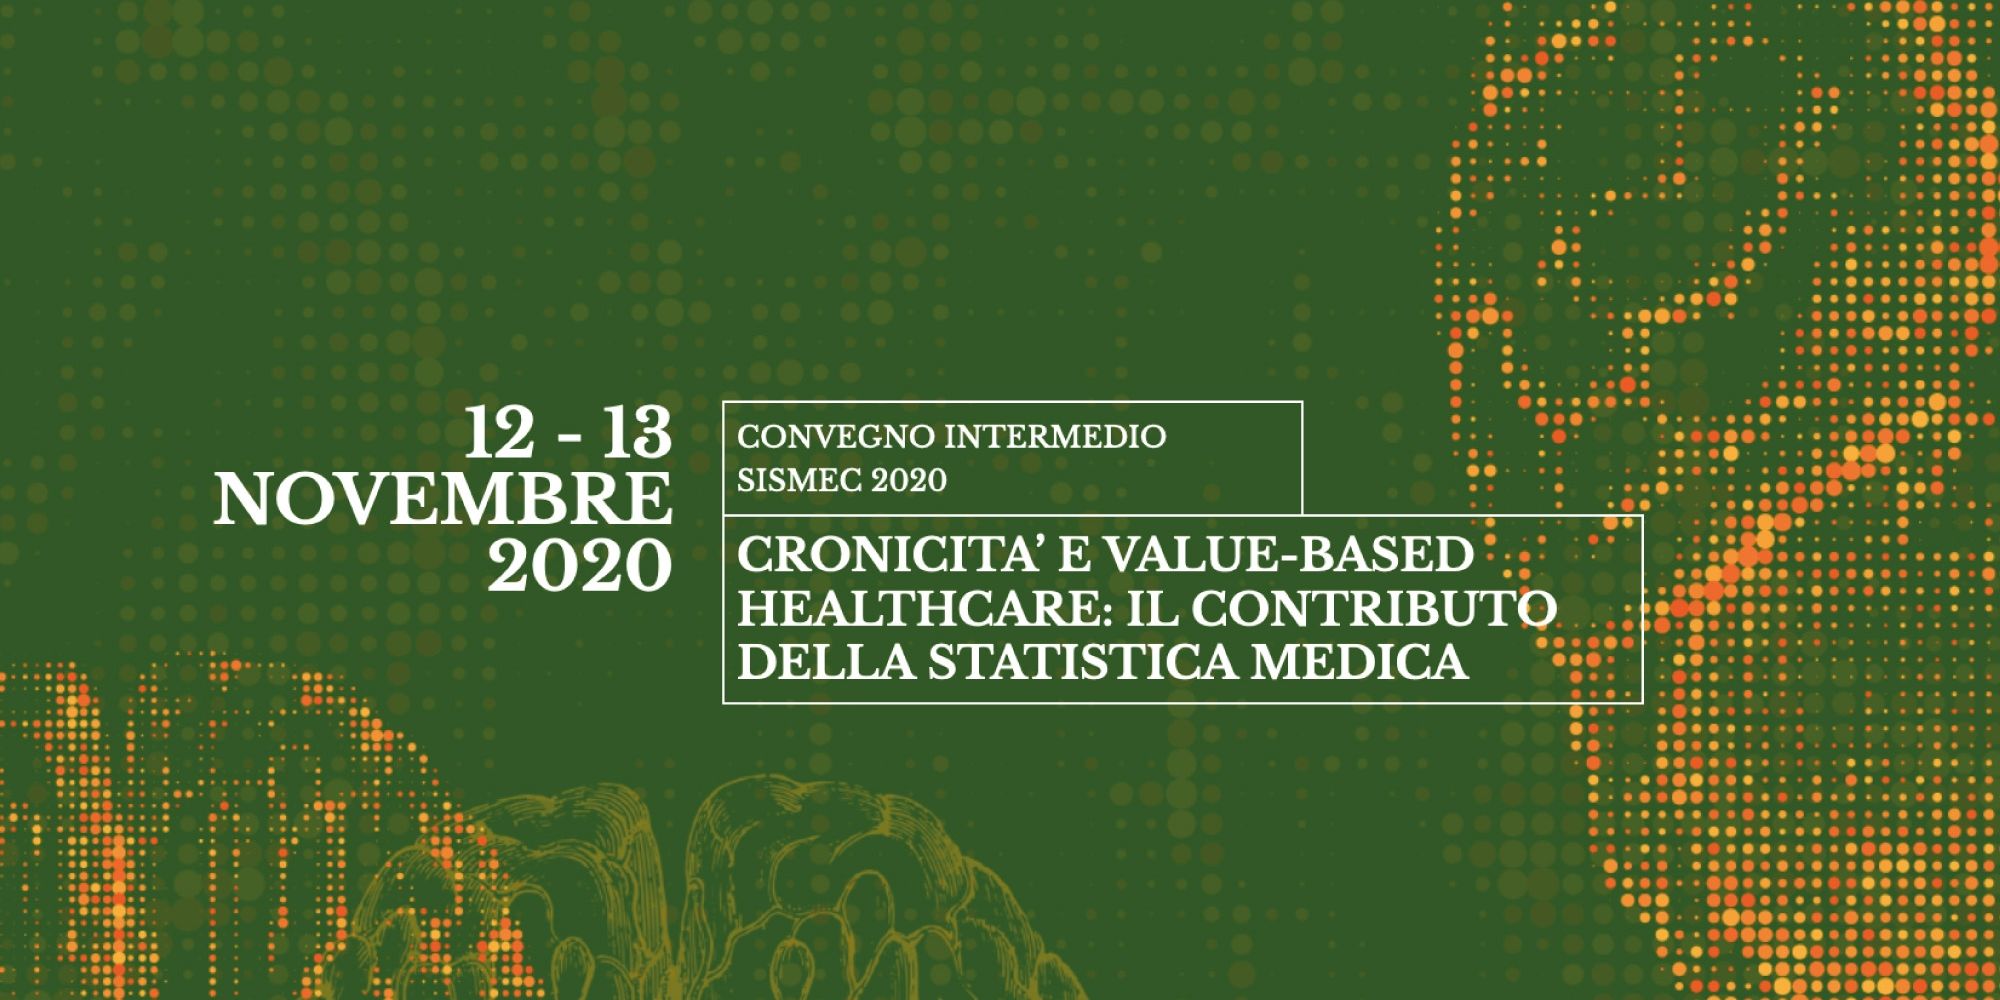 Congresso intermedio Sismec - Cronicità e value-based healthcare